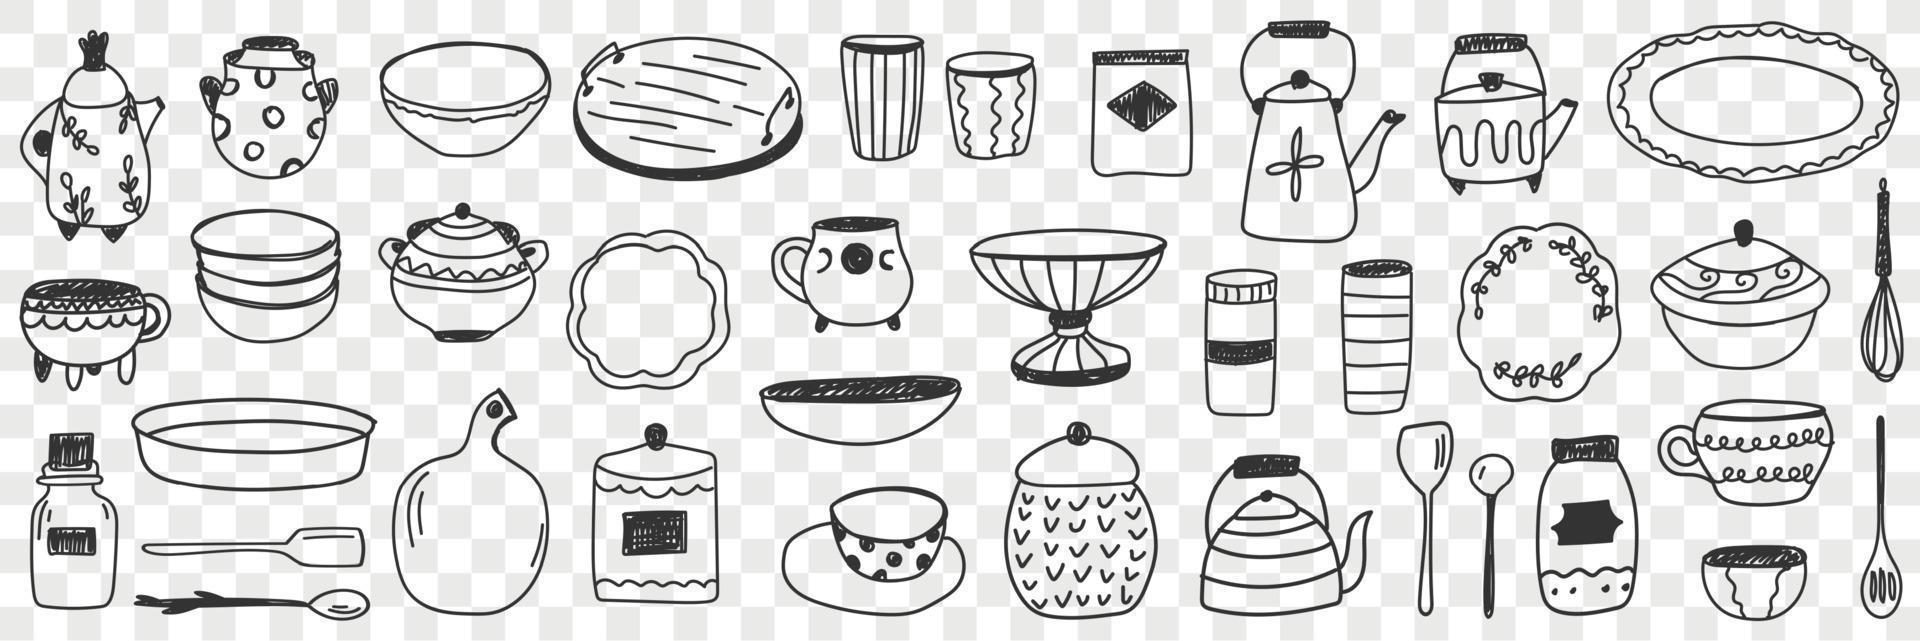 Geschirr auf Küche Gekritzel Satz. Sammlung von Hand gezeichnet Küche und Geschirr Bretter Töpfe Wasserkocher Platten Besteck Brille Tassen zum Kochen und Essen isoliert auf transparent Hintergrund vektor